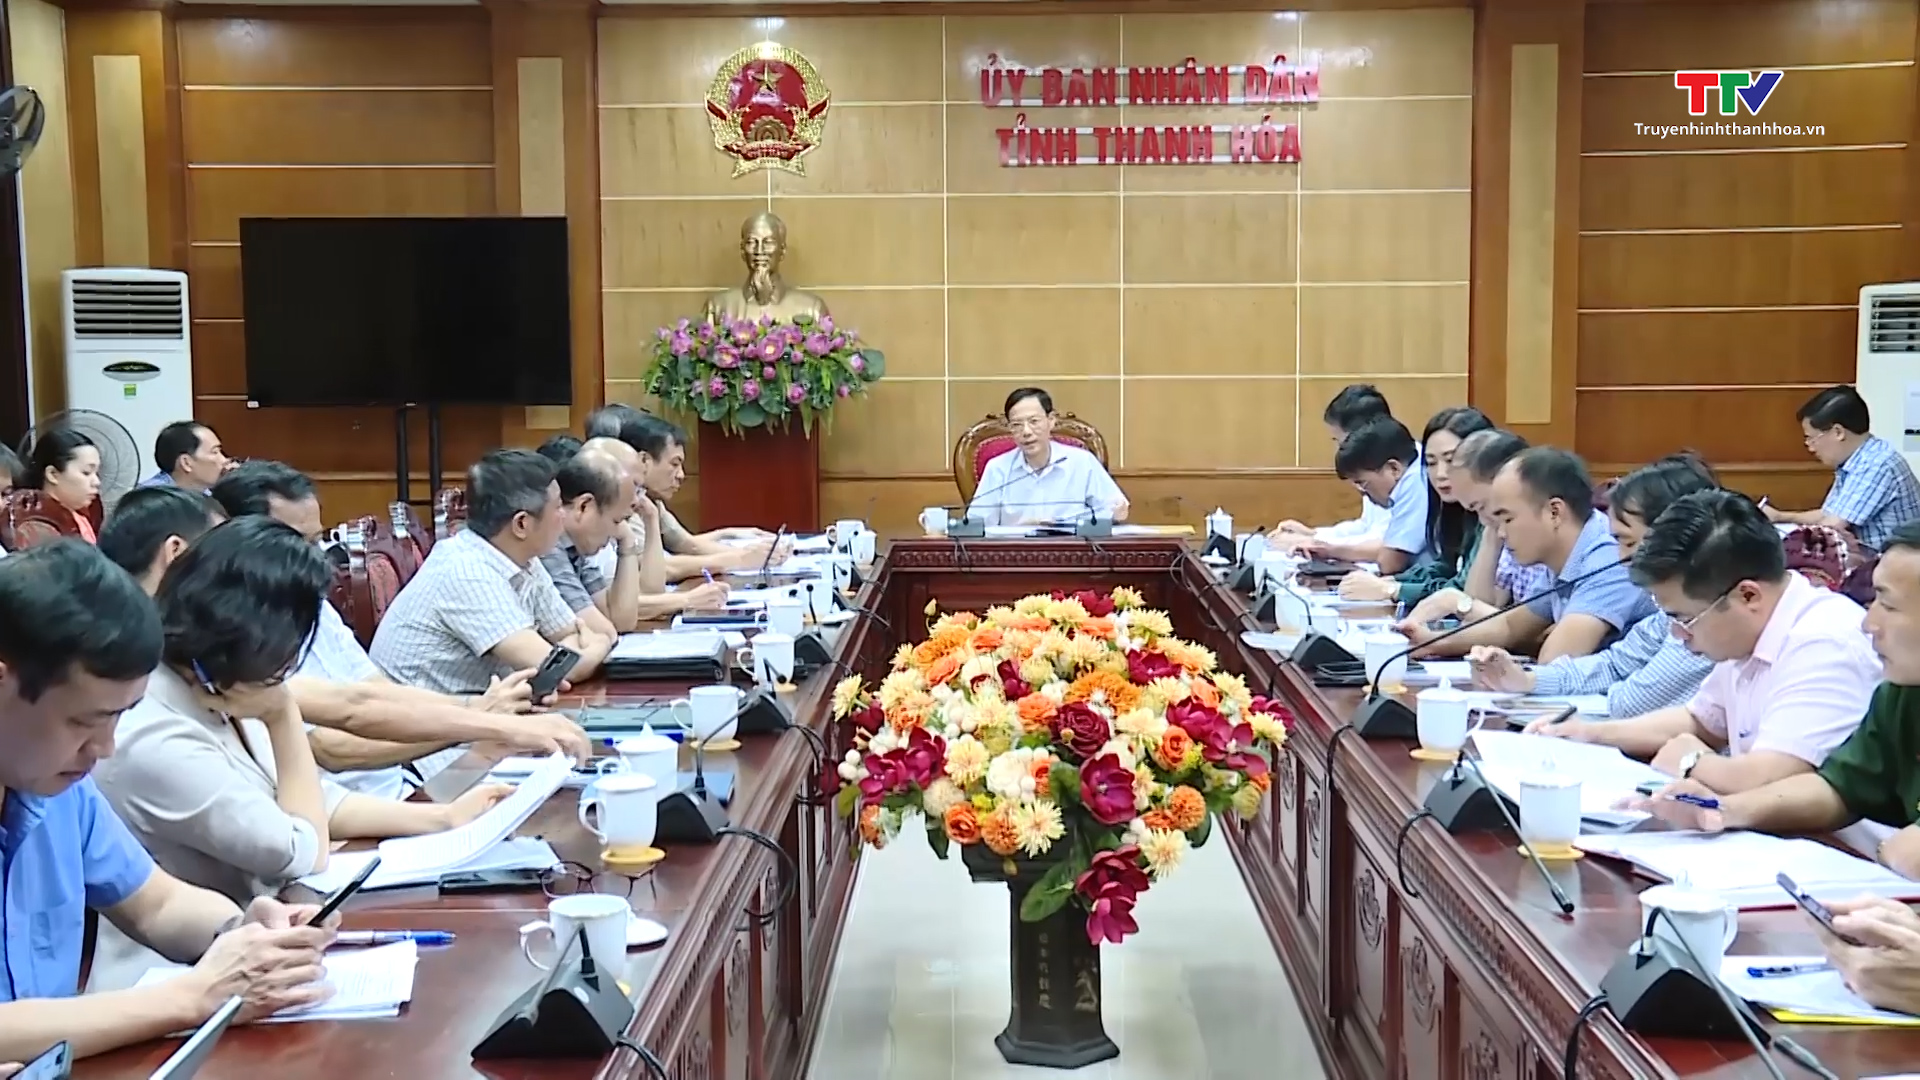 Hội nghị đánh giá Chương trình phát triển kinh tế - xã hội khu vực miền núi tỉnh Thanh Hóa giai đoạn 2021 – 2025 - Ảnh 2.